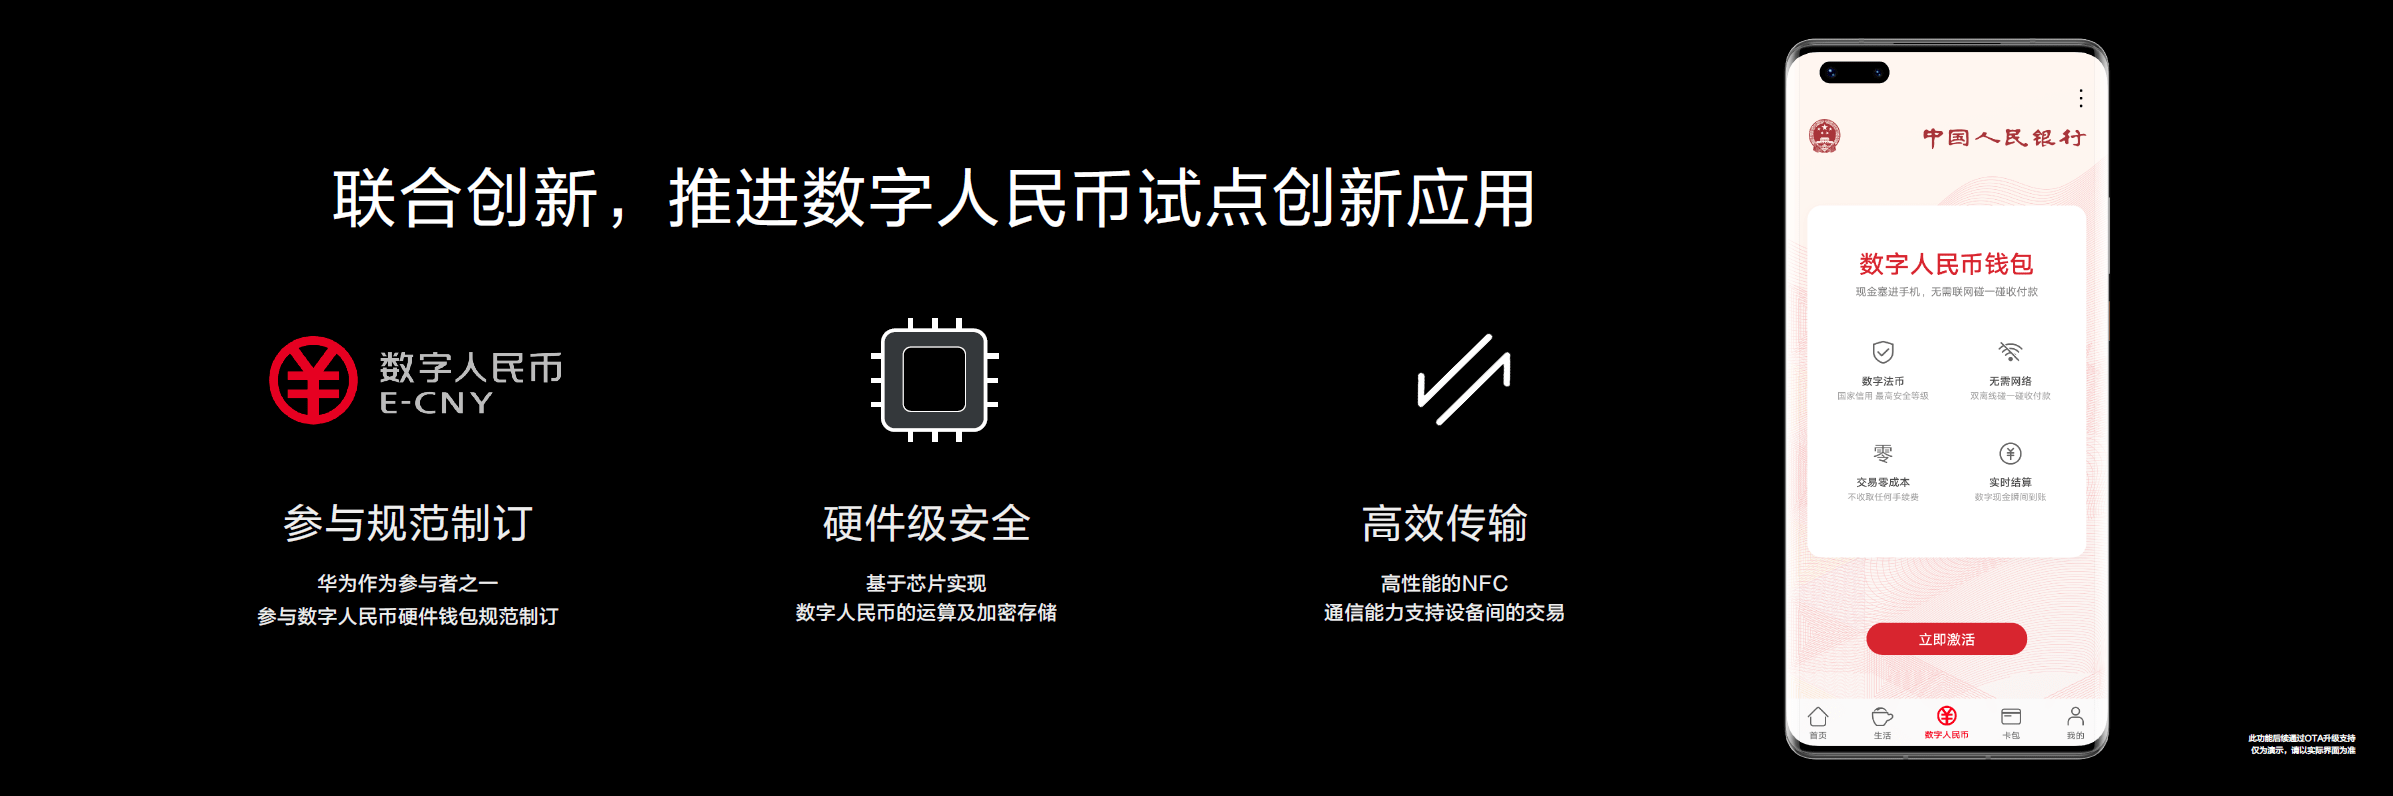 腾讯游戏安全中心的网址是_中国知网的网址是_imtoken网址是什么